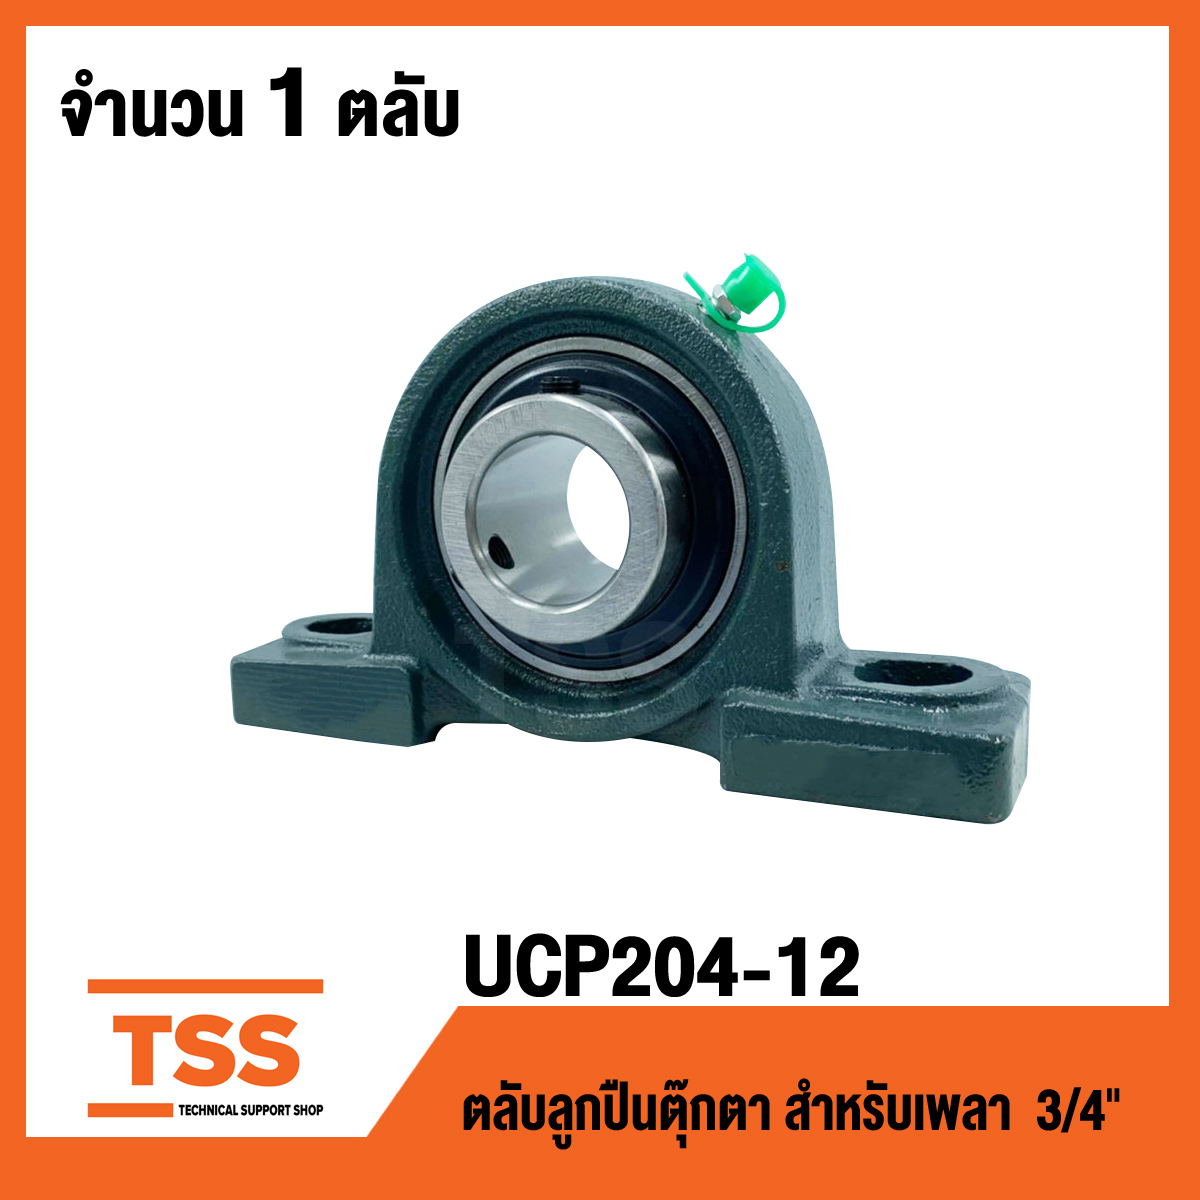 UCP204-12 ตลับลูกปืนตุ๊กตา UCP 204-12 Bearing Units ( เพลา 3/4 นิ้ว , 6หุน , 19.05 มิล ) UC204-12 + P204